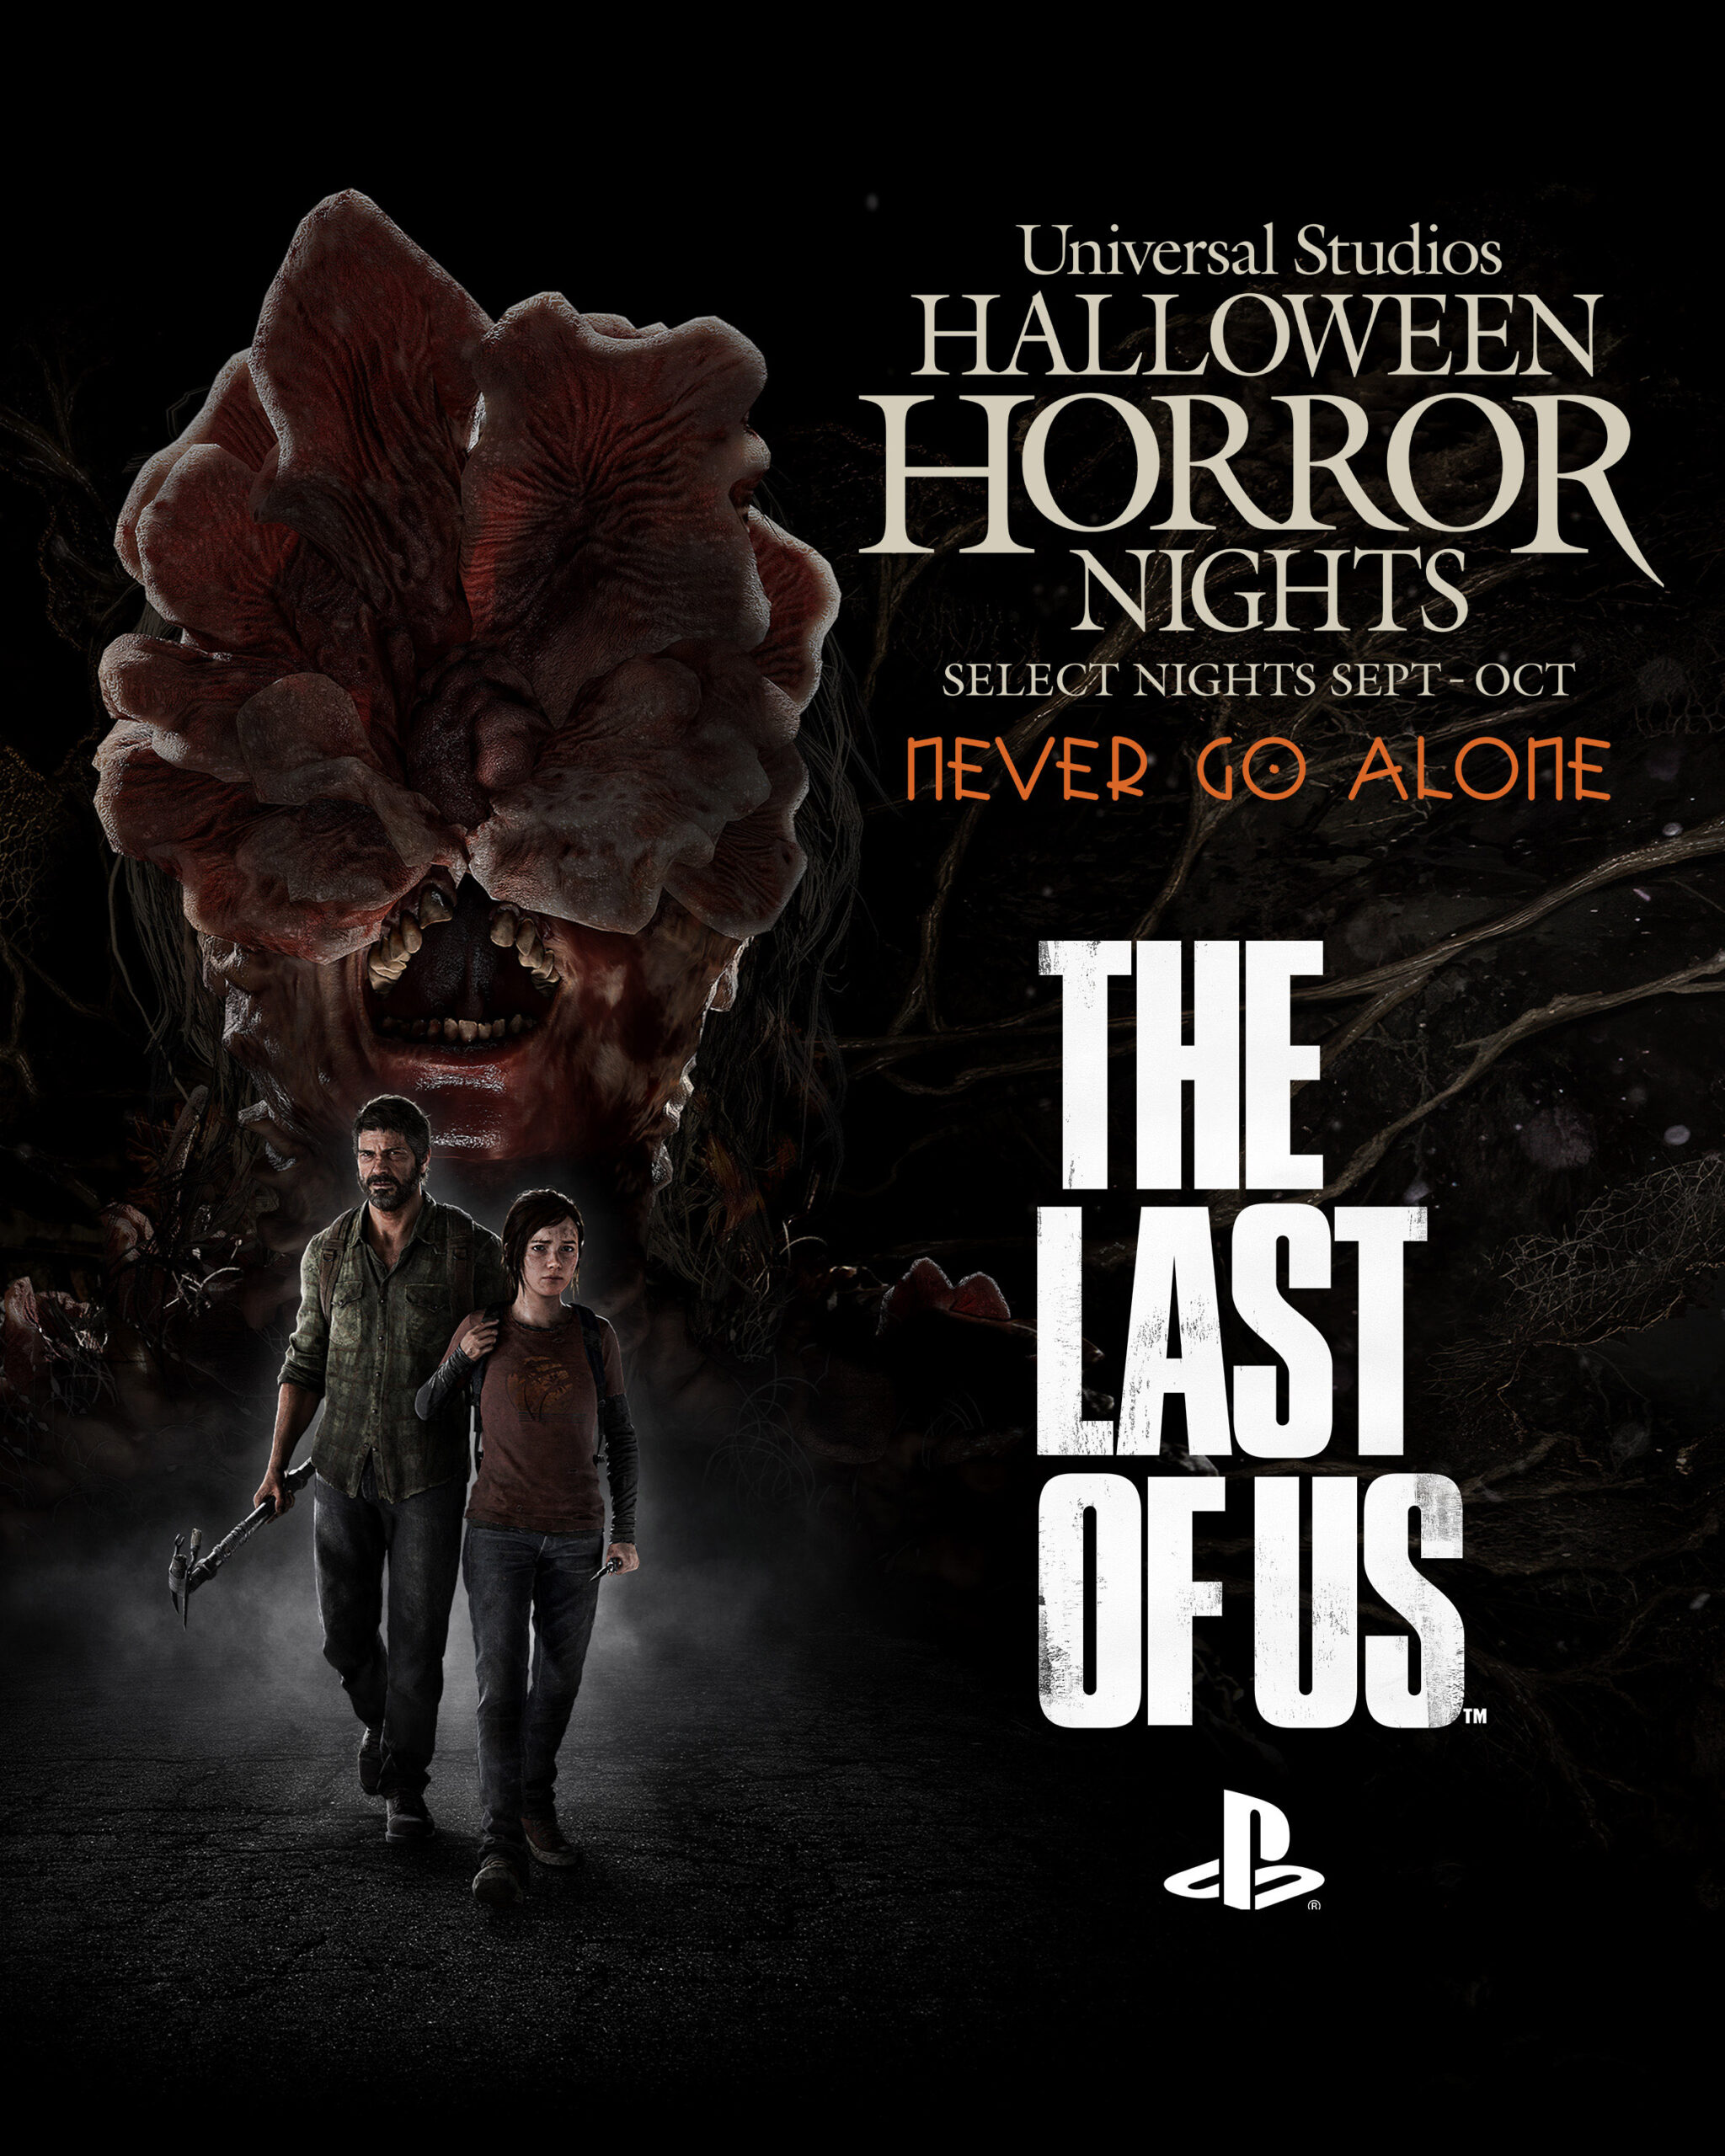 Parques de Universal anuncian The Last of Us como atracción de Halloween Horror Nights